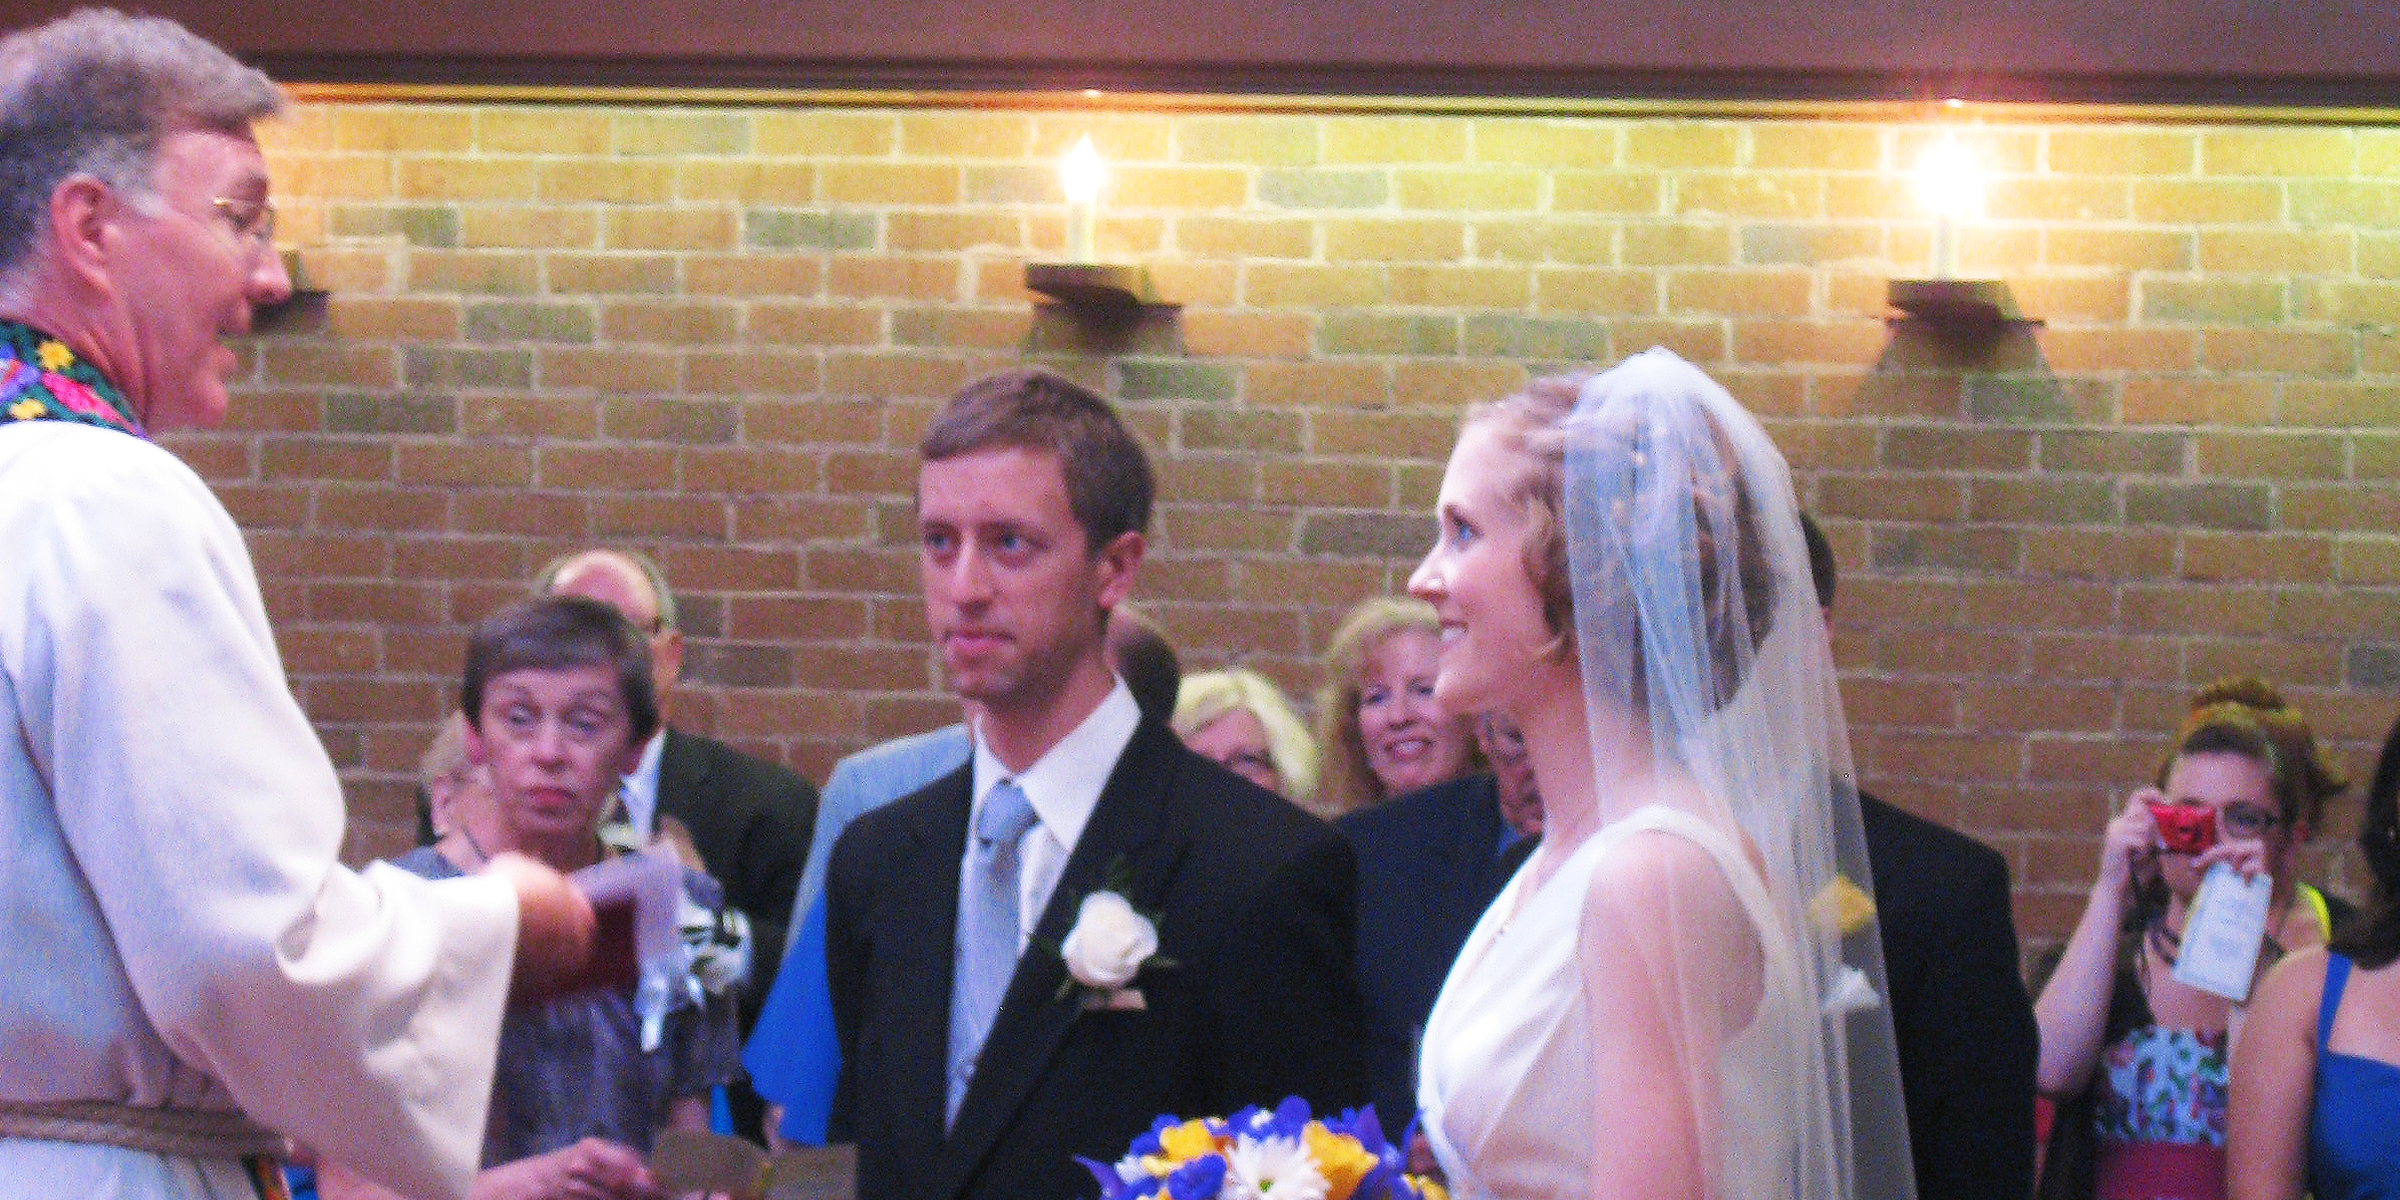 Eine Braut und ein Bräutigam stehen vor dem Altar | Quelle: Shutterstock